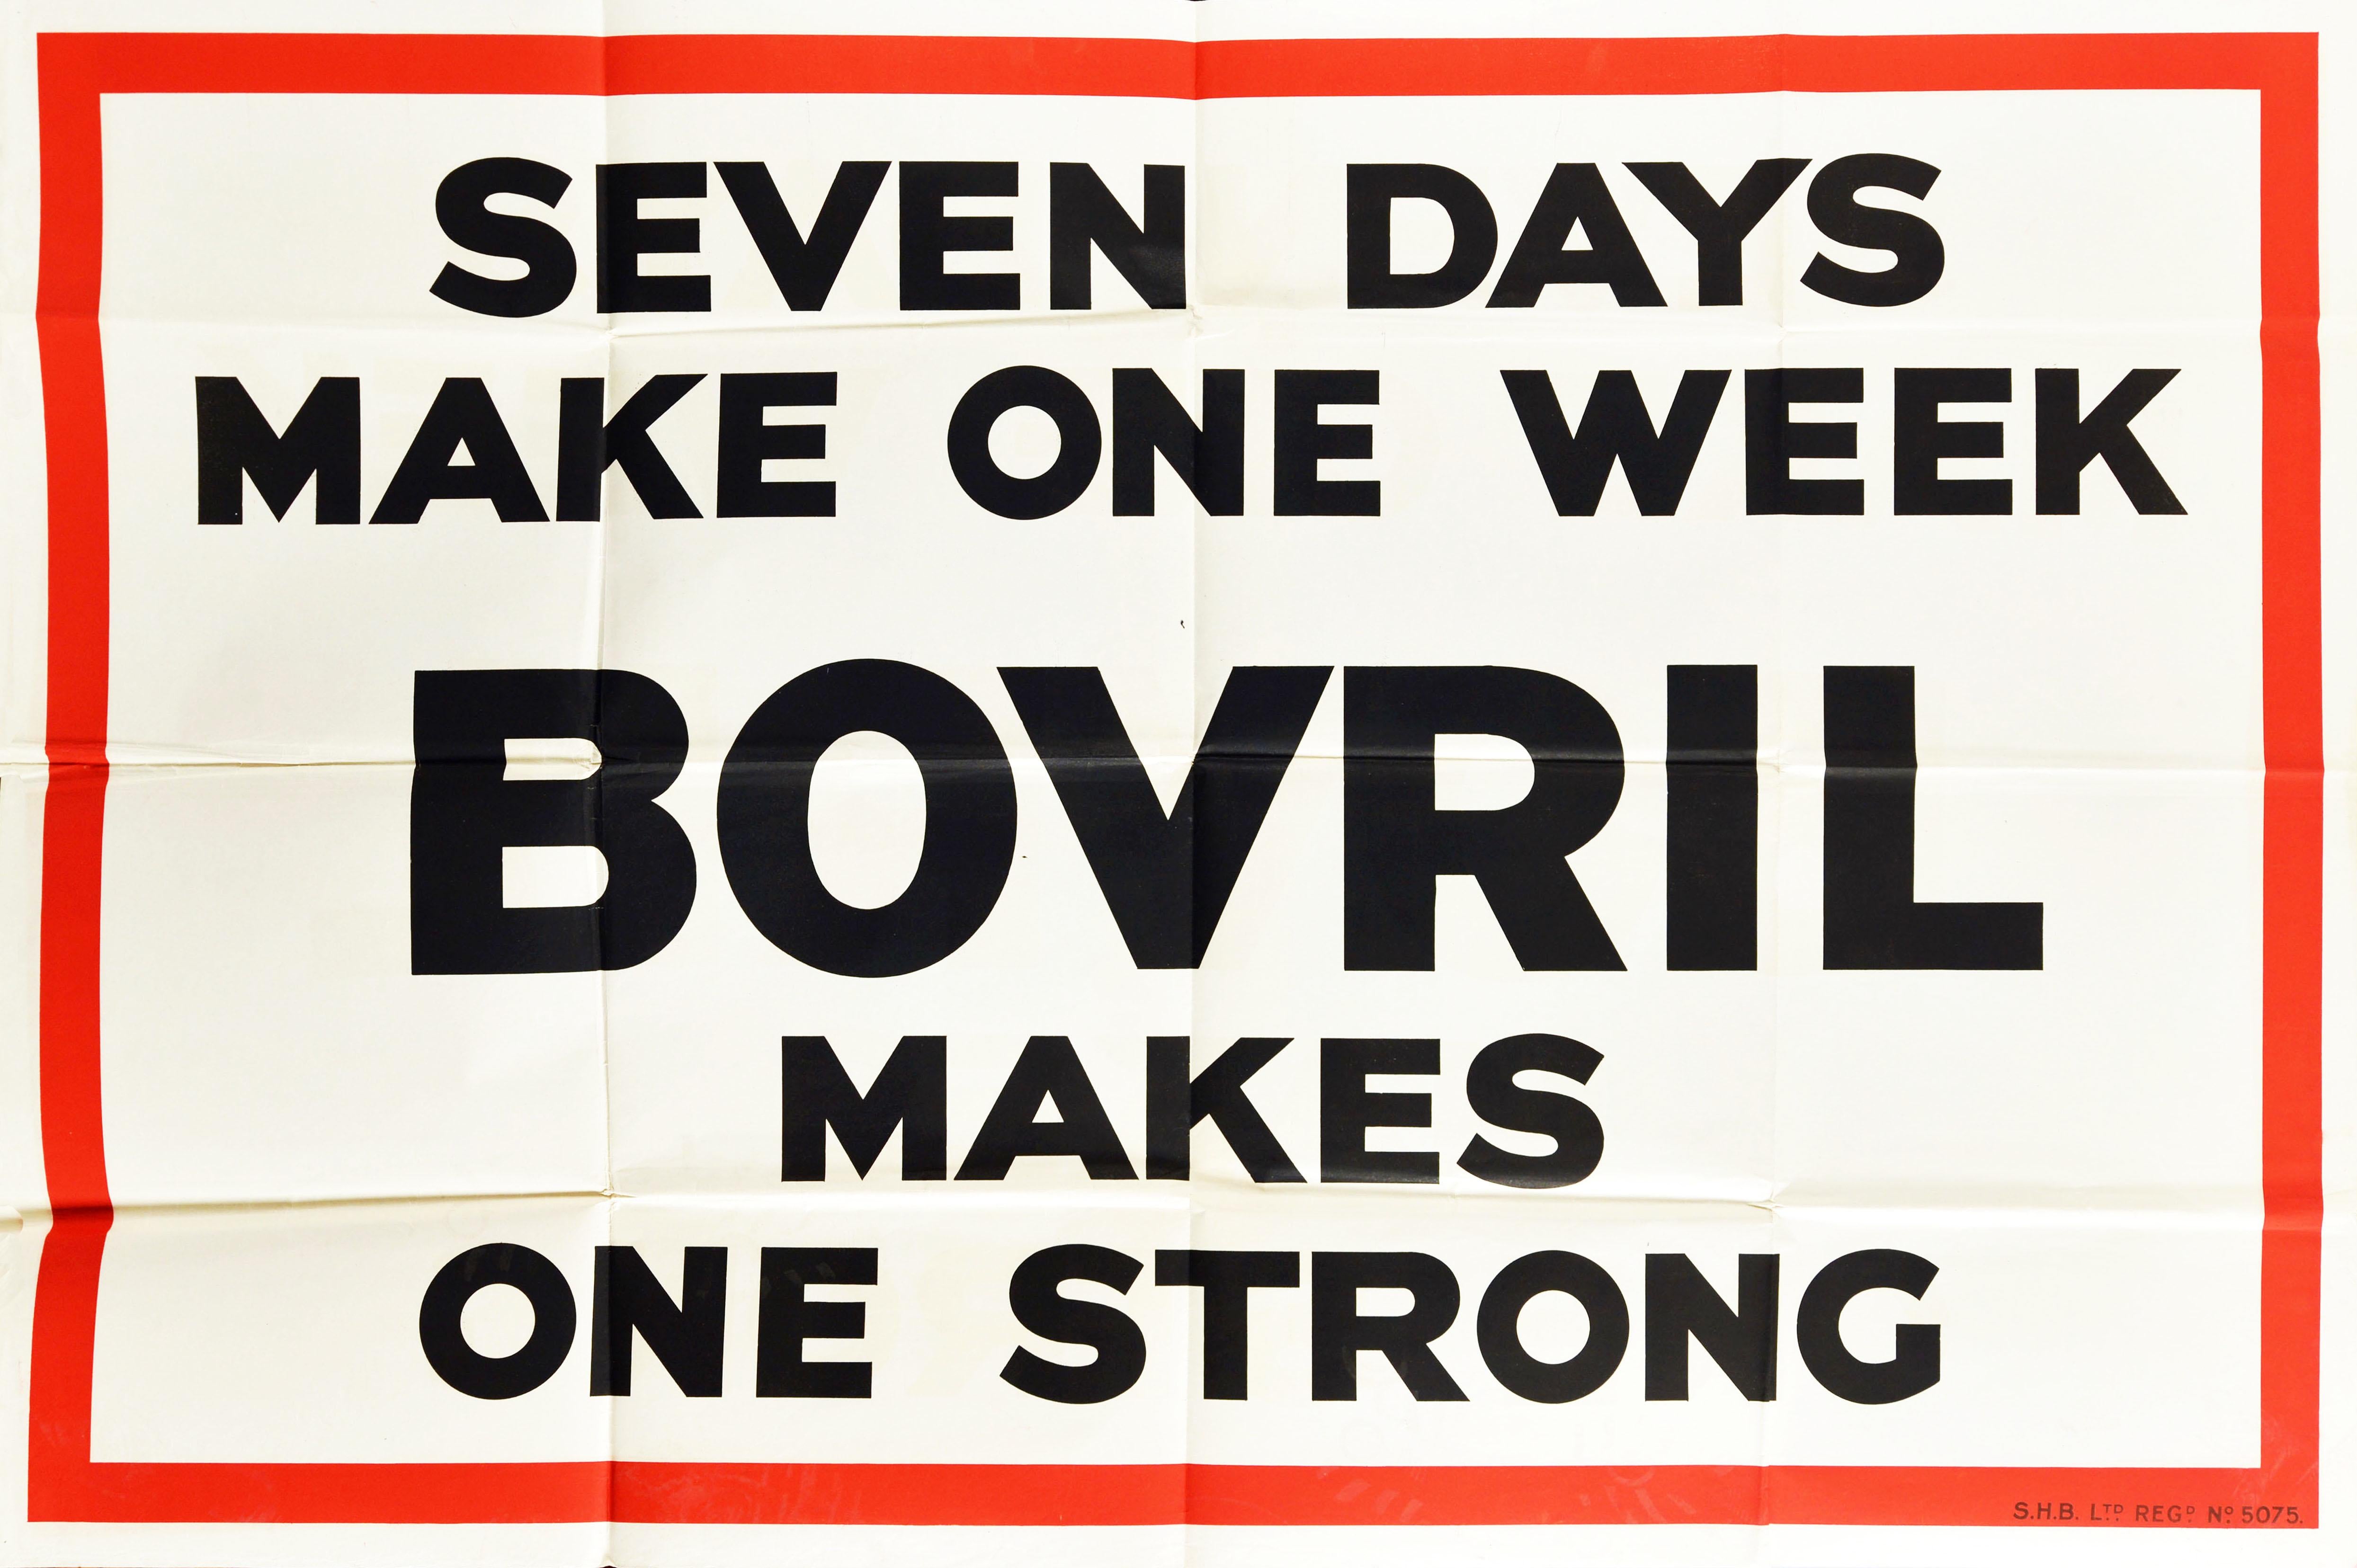 Affiche publicitaire vintage originale pour Bovril - Seven days make one week Bovril makes one strong - avec des lettres noires sur un fond blanc et un cadre rouge. Imprimée en Grande-Bretagne dans les années 1930, cette campagne utilise des jeux de